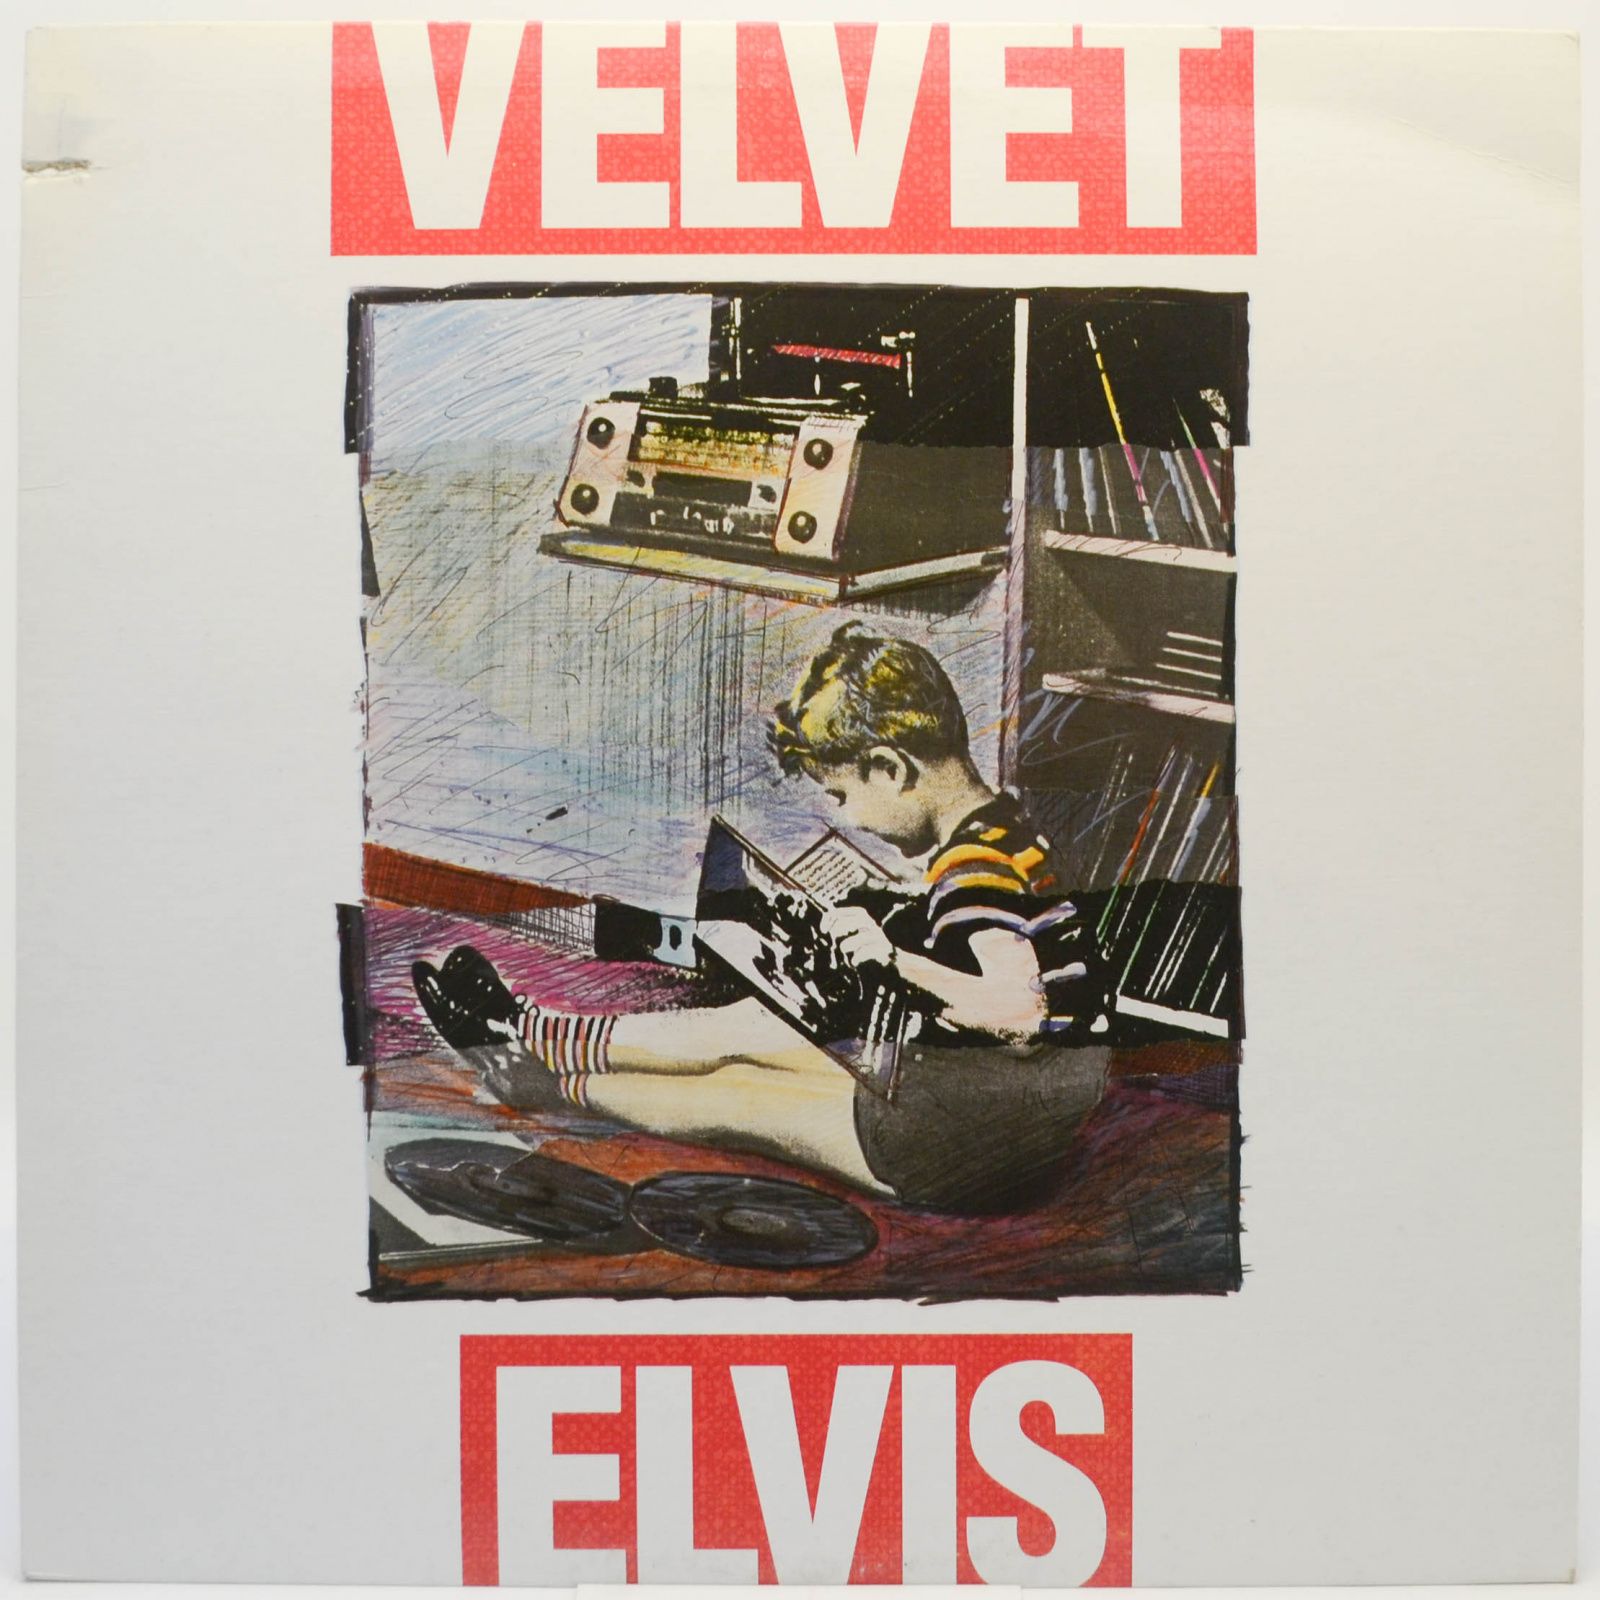 Velvet Elvis (USA), 1988